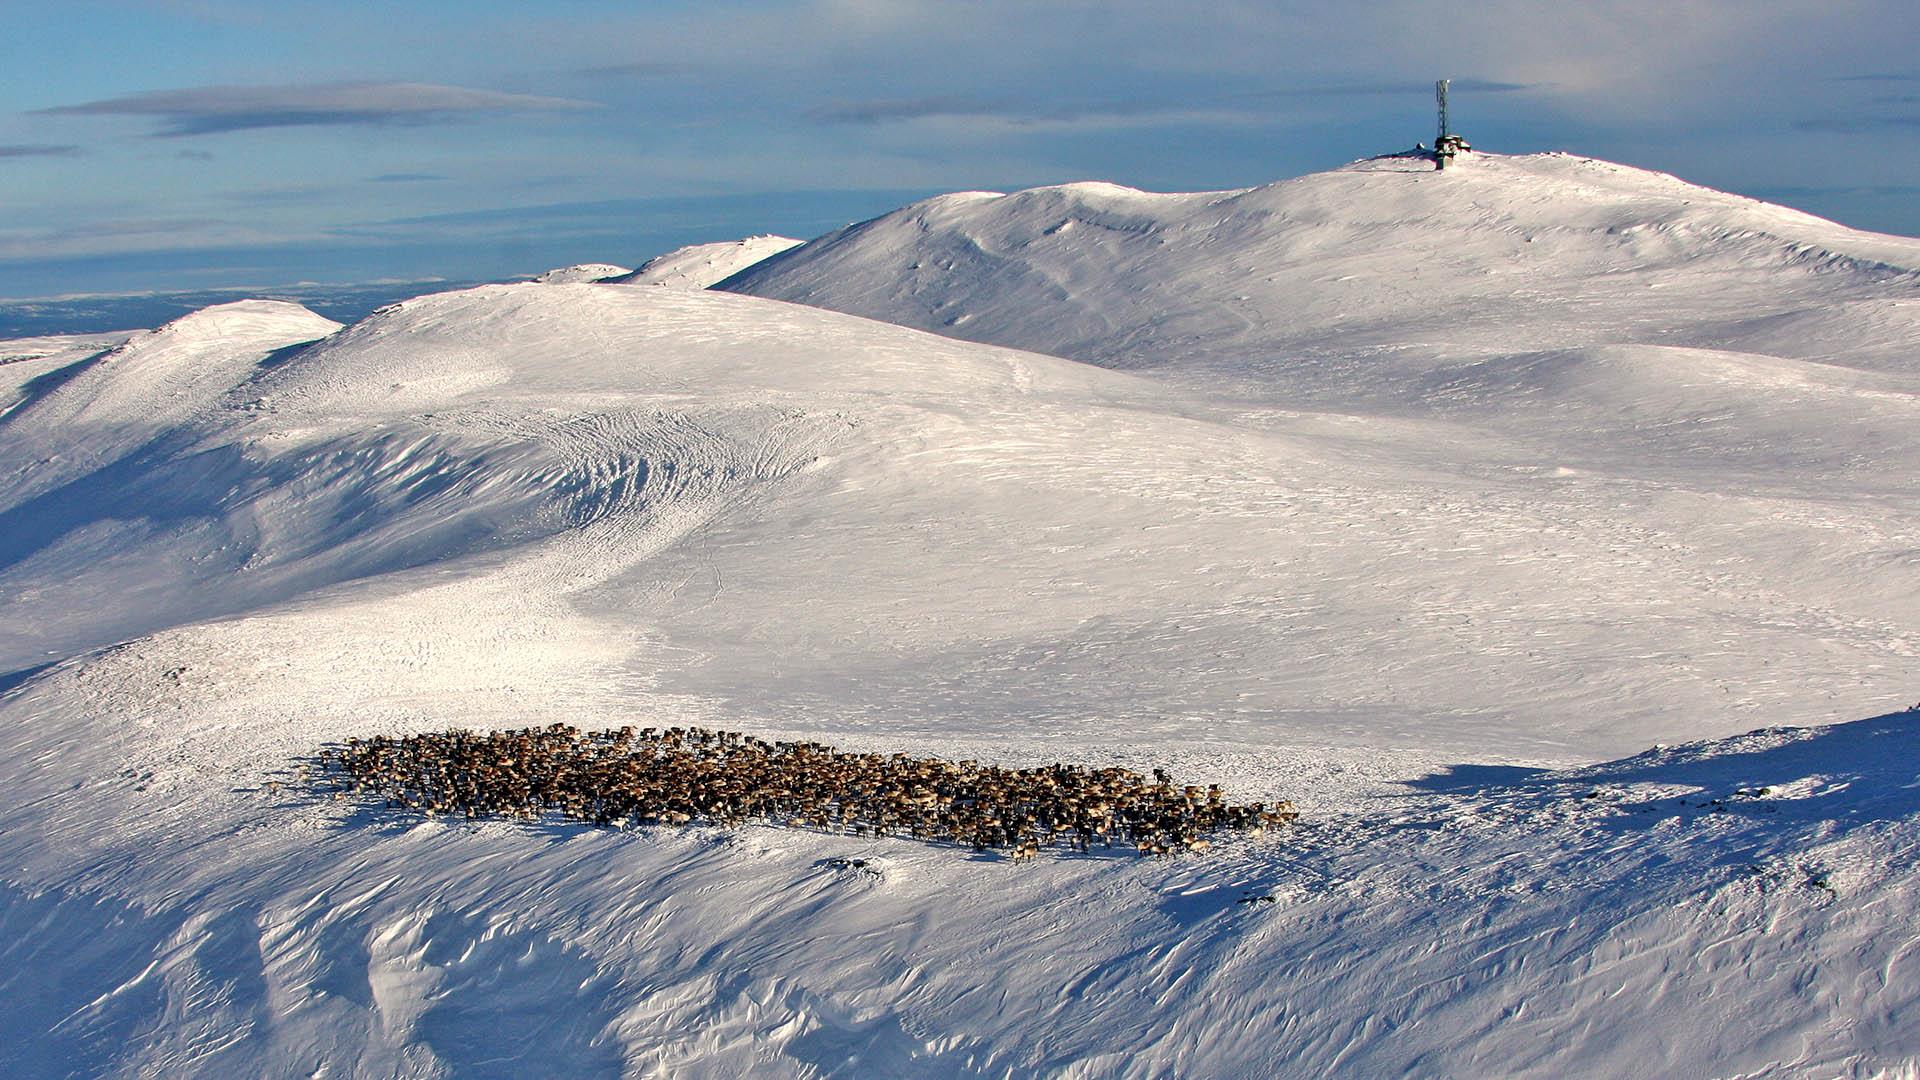 Vinterbilde med utsikt mot snødekte Spåtind i bakgrunnen, med en stor reinflokk foran fjellet.